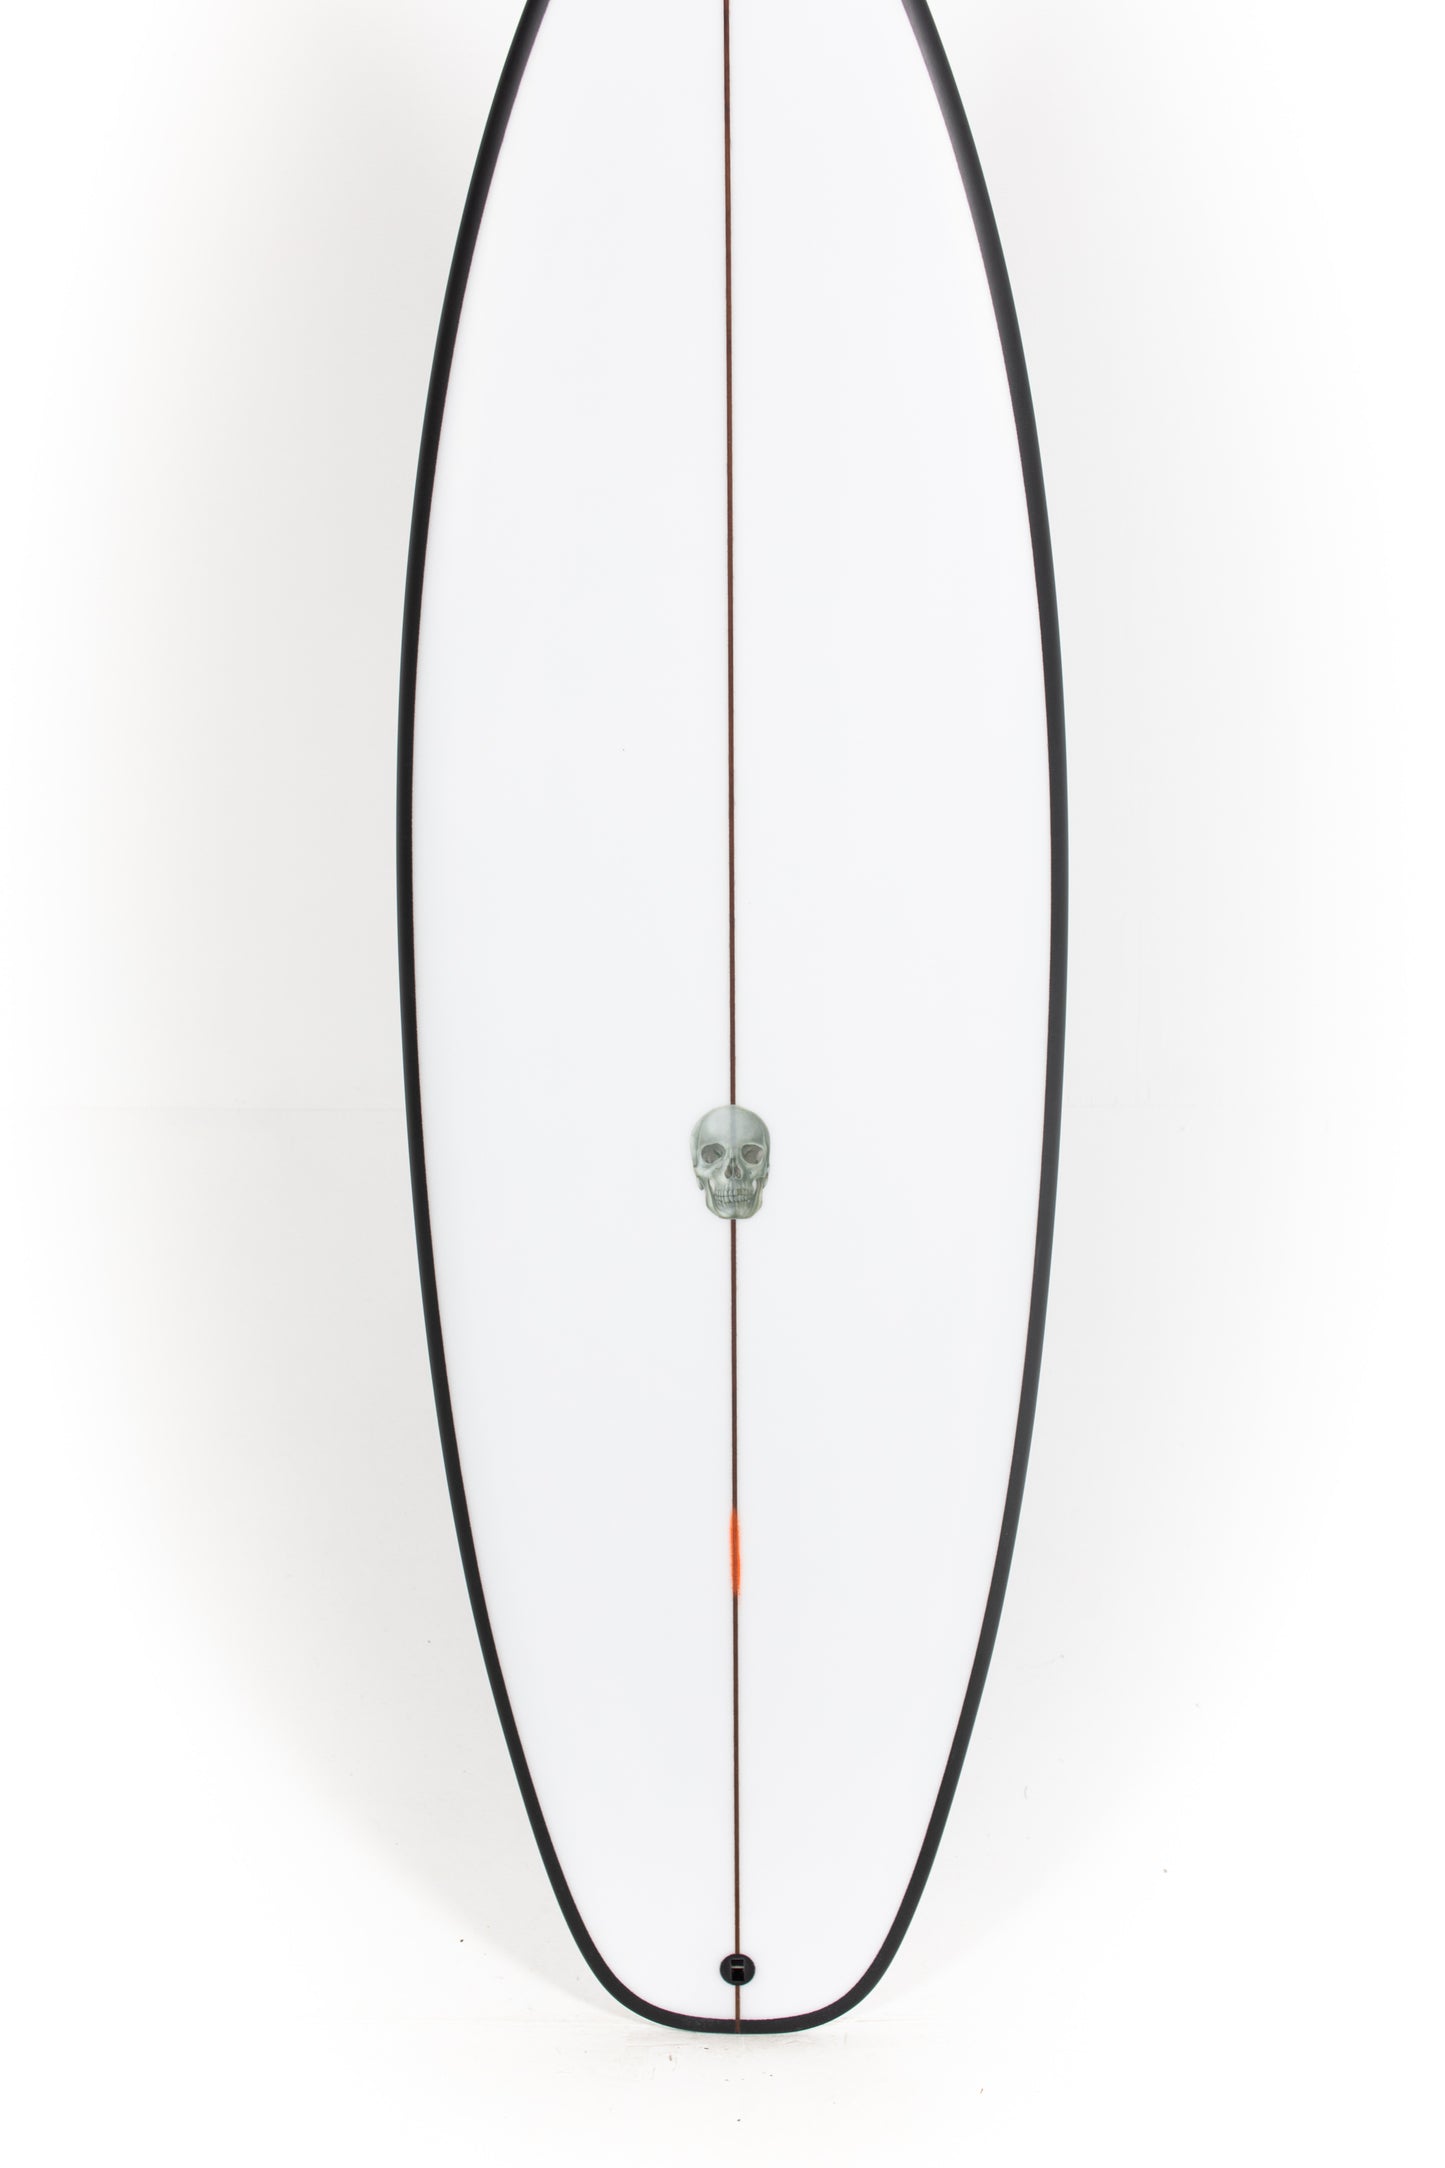 
                  
                    Pukas Surf Shop - Christenson Surfboards - OP1 - 5'6" x 19 x 2 3/8 x 26,23L - CX04799
                  
                